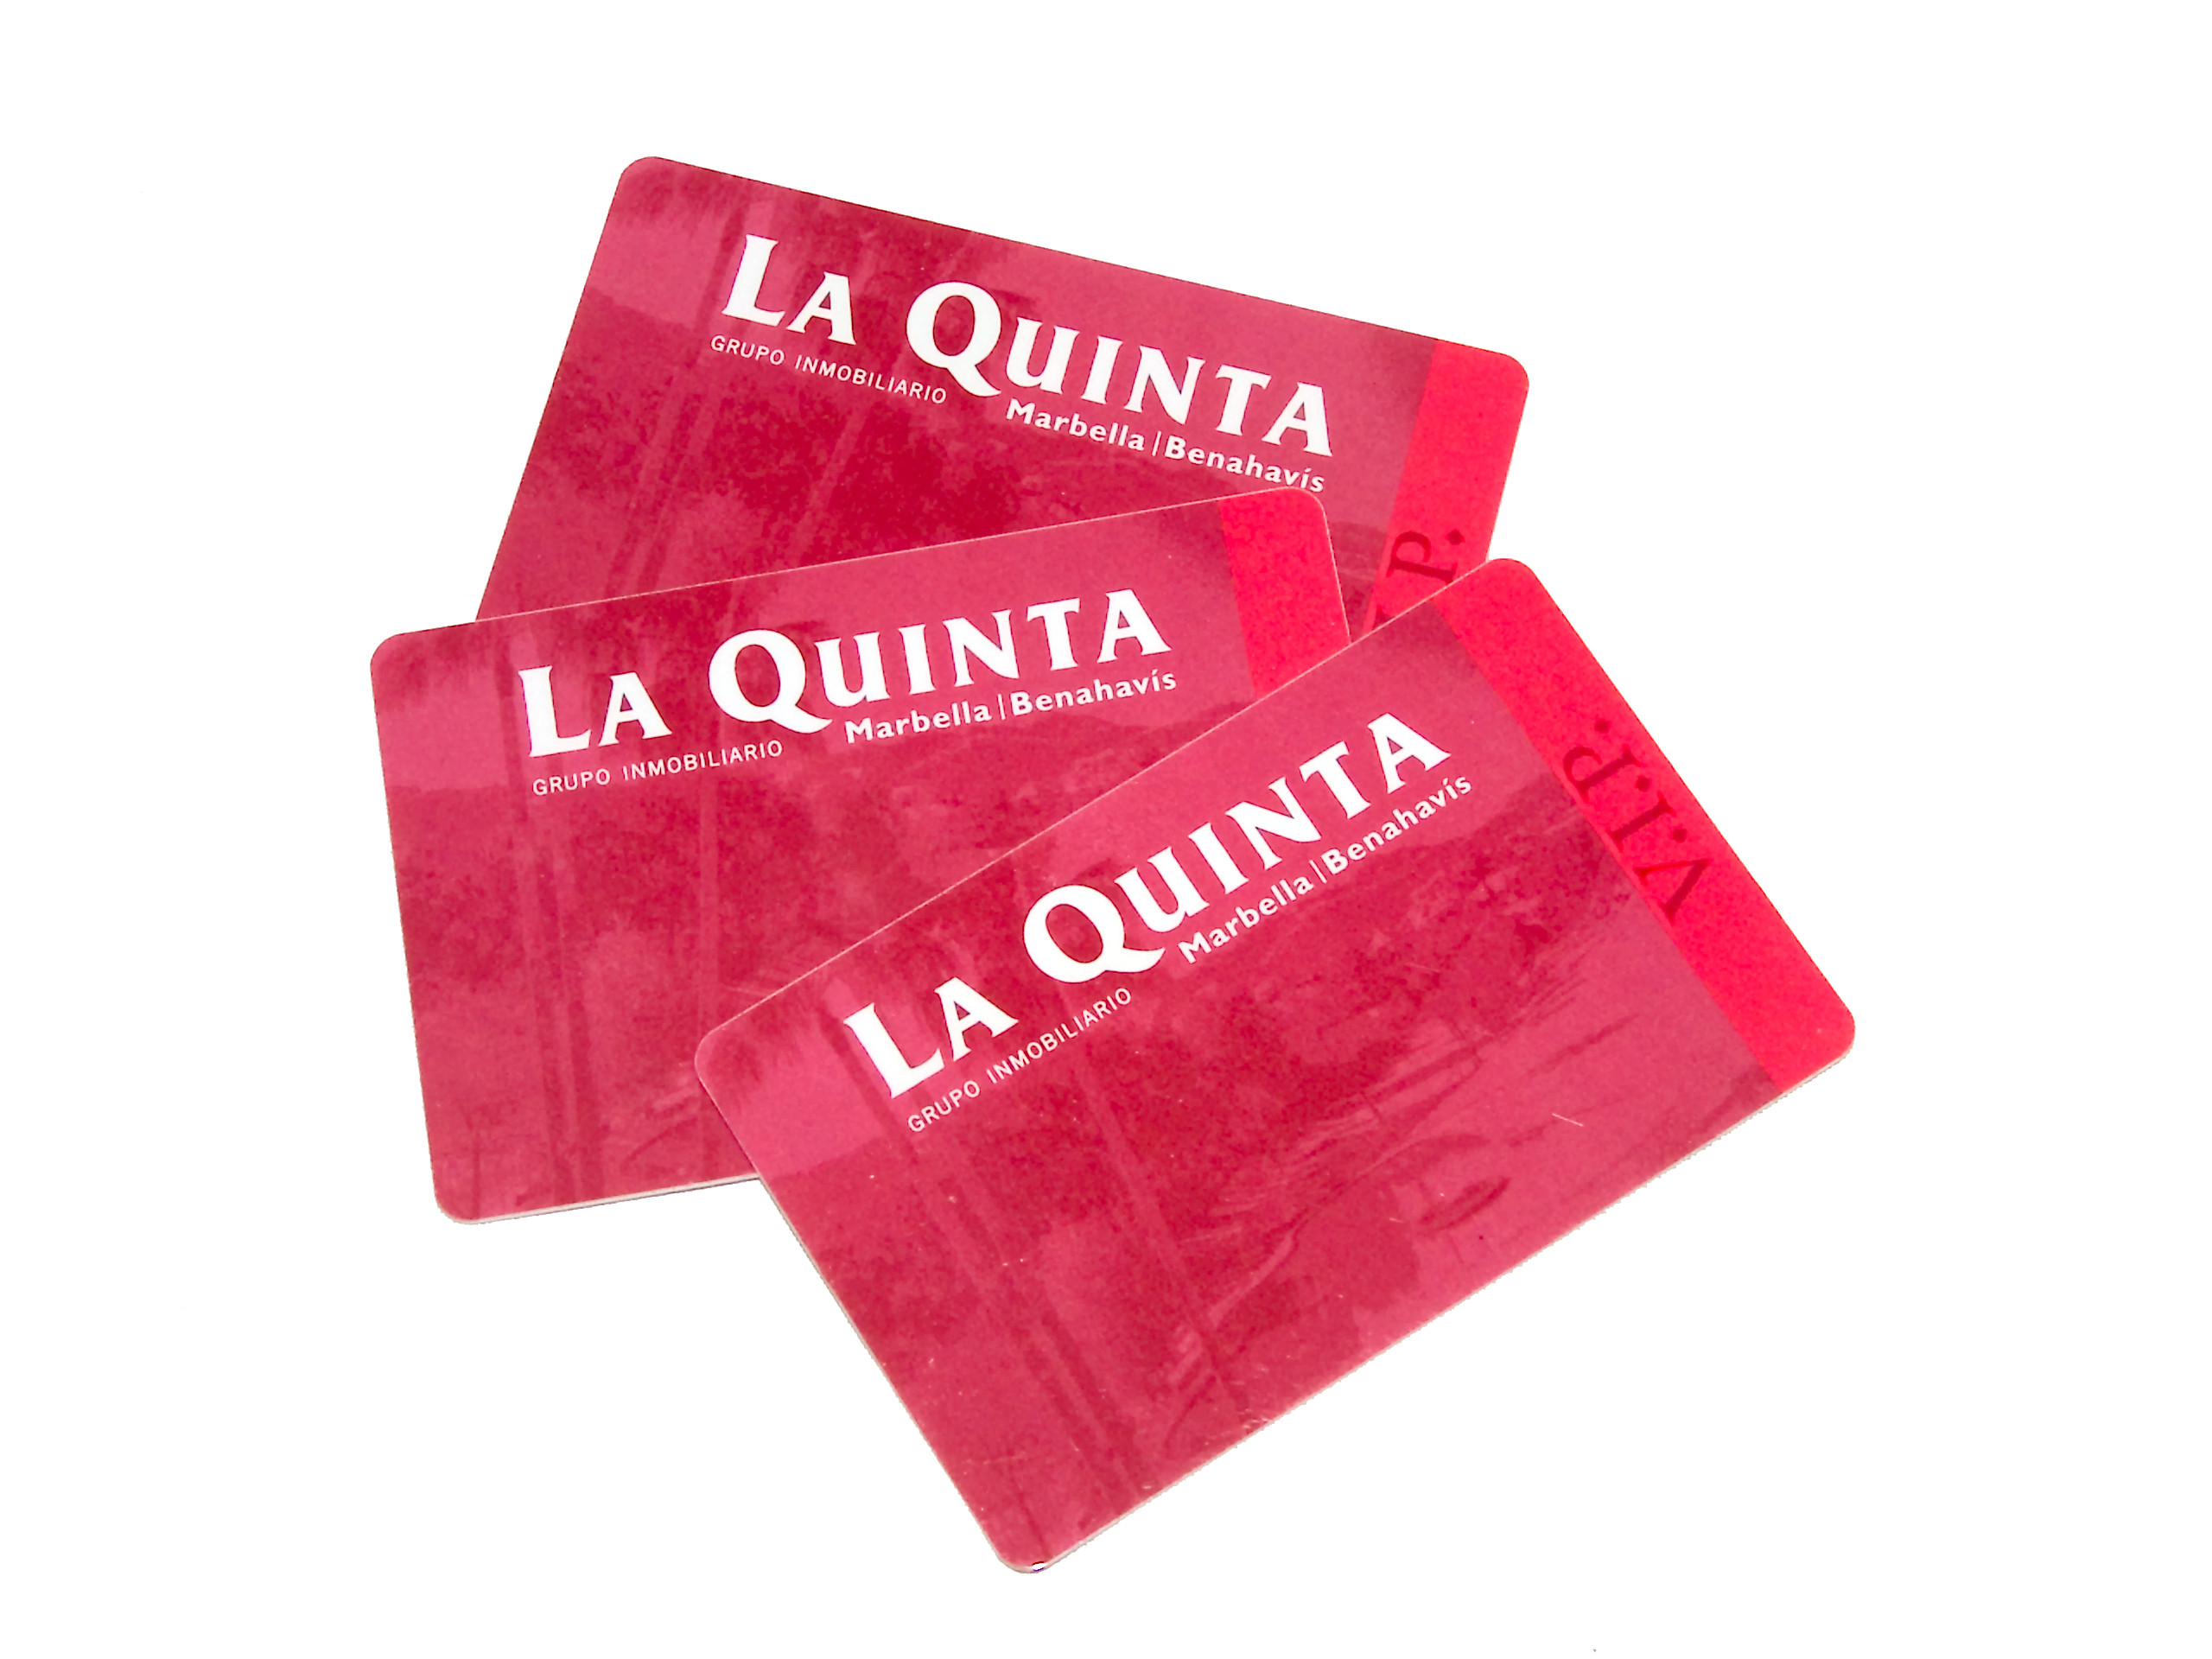 Vip Card La Quinta